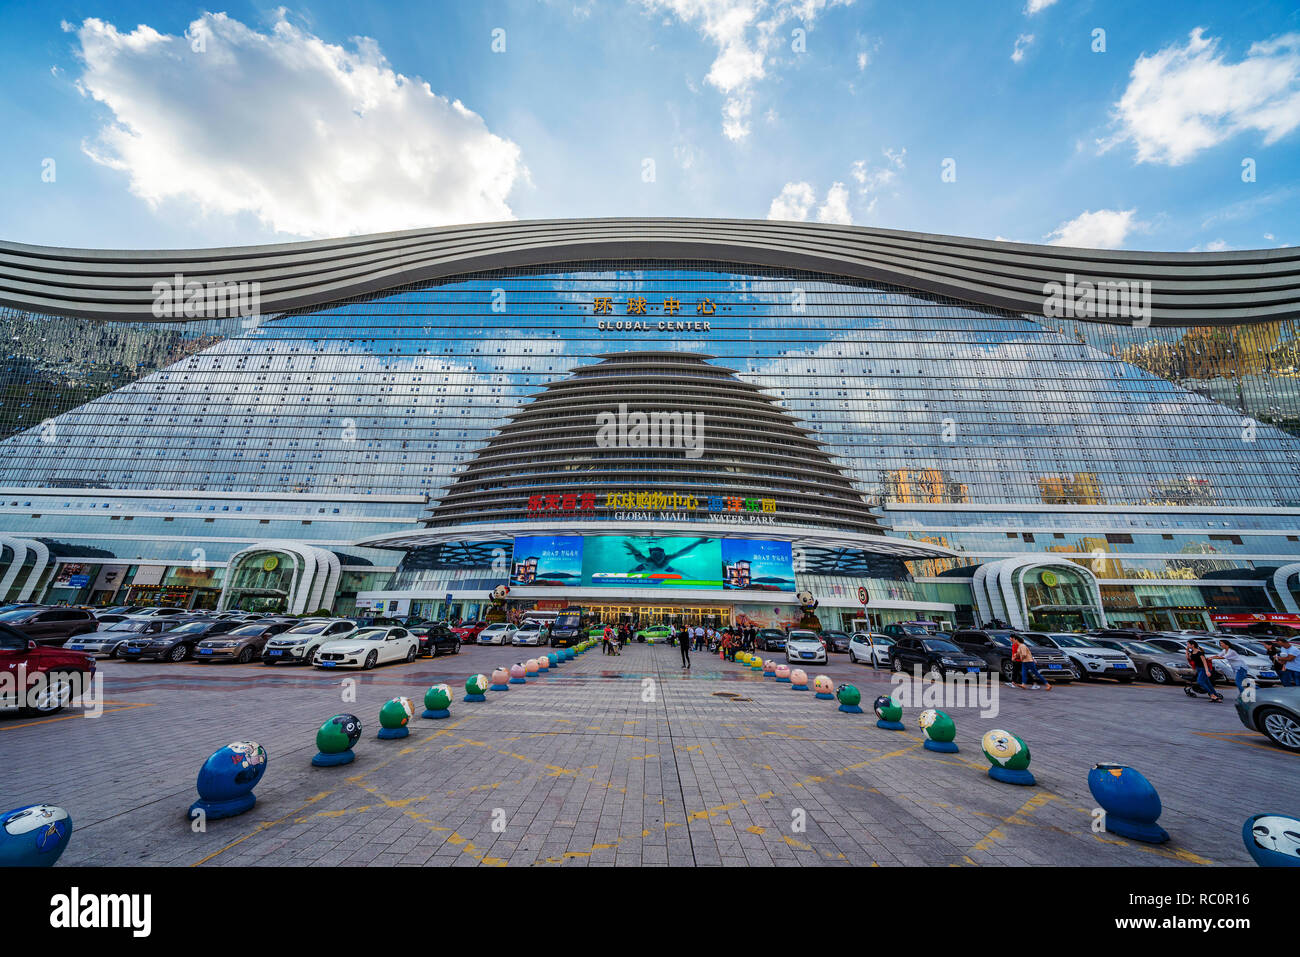 CHENGDU, CHINE - 28 SEPTEMBRE : c'est le siècle nouveau Centre mondial, c'est le plus grand centre commercial au monde et une célèbre destination de voyage sur Septem Banque D'Images